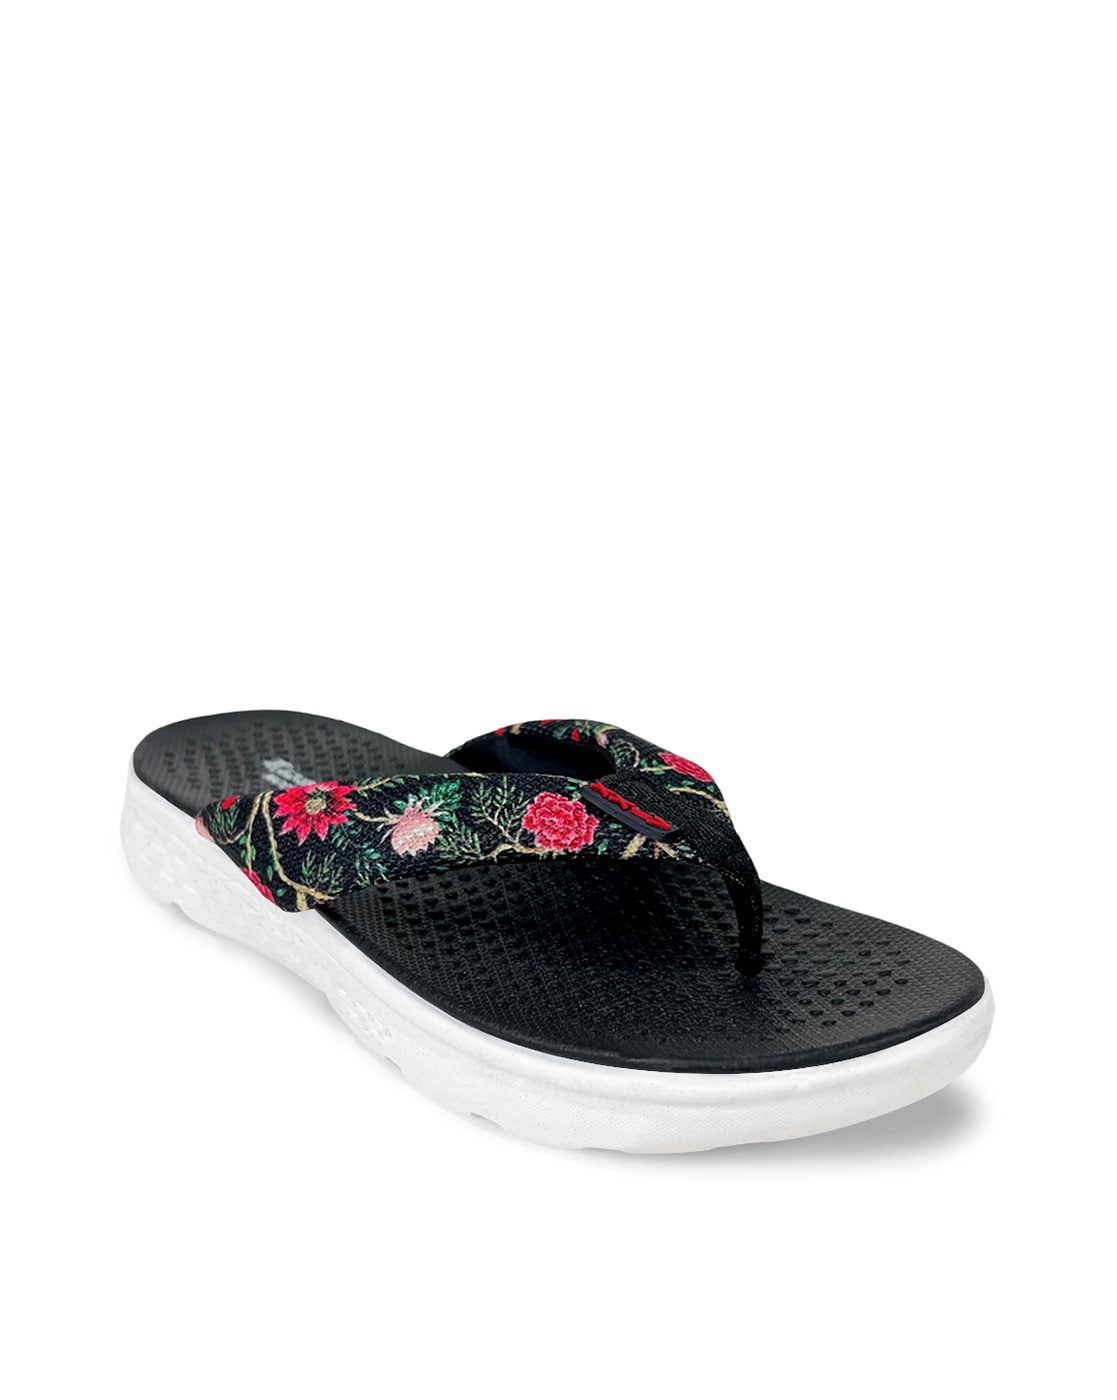 Buy Black Flip Flop & Slippers for Women by KazarMax Online